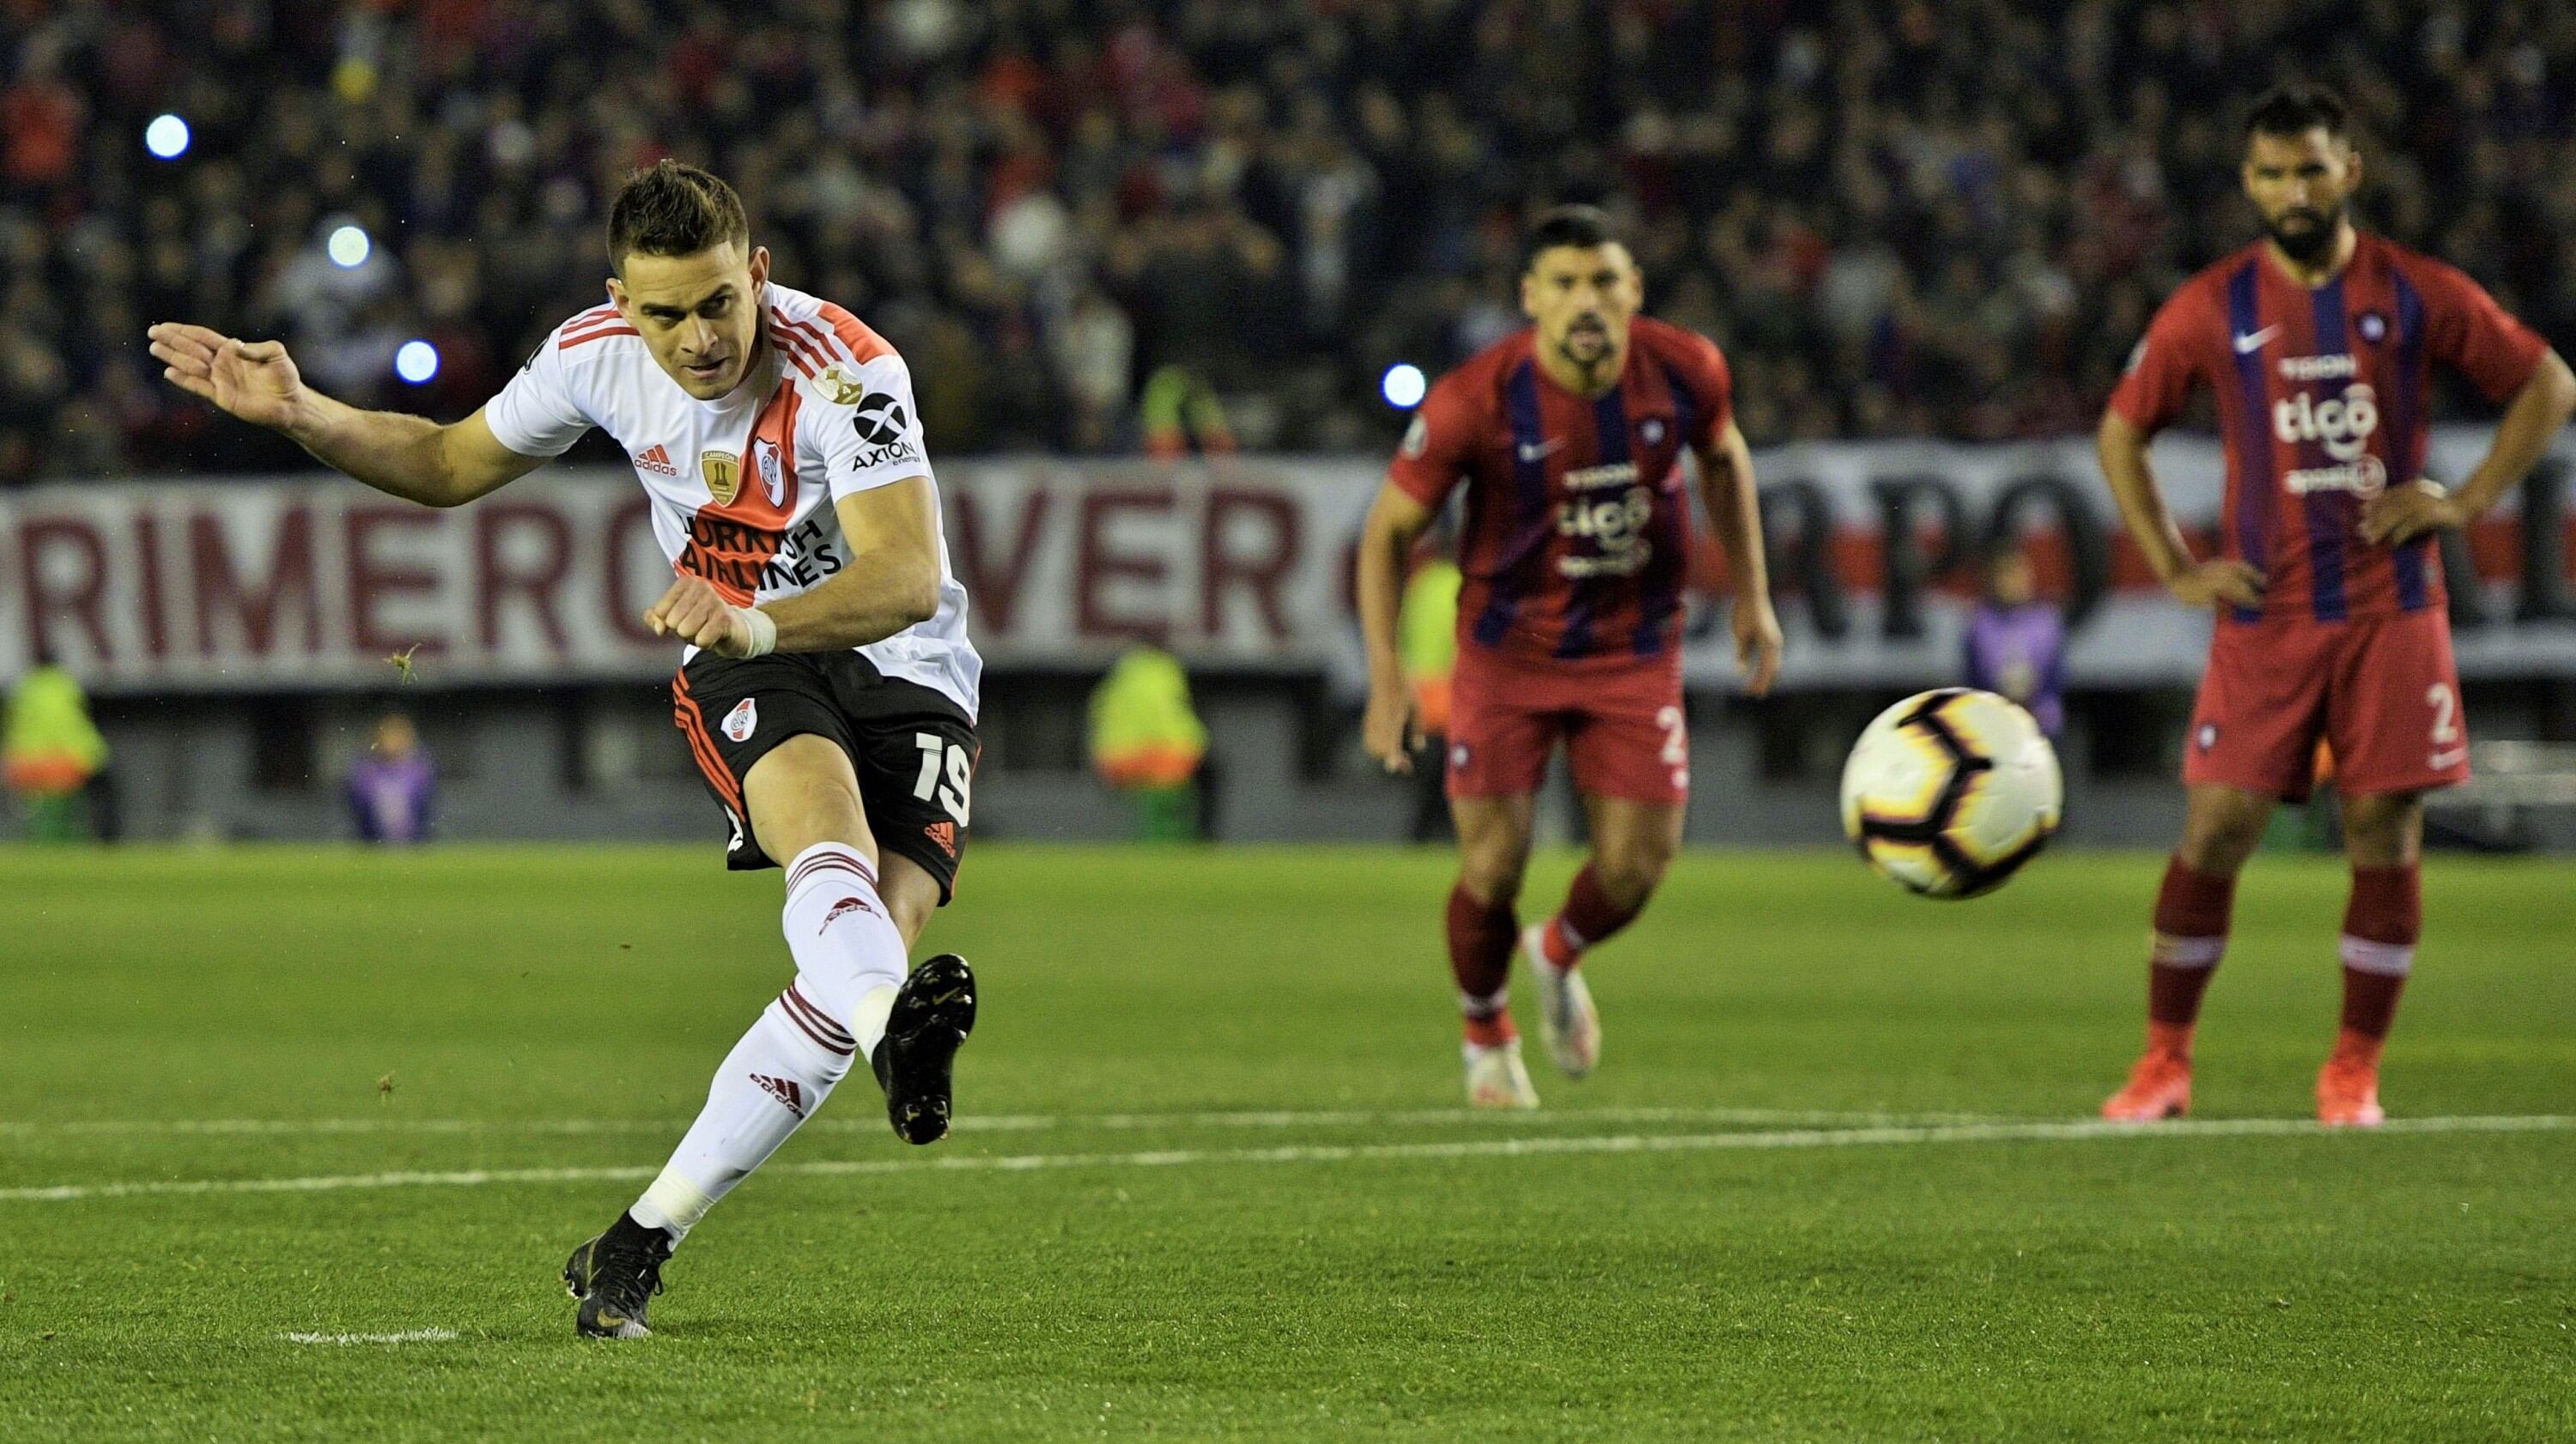 Santos Borré pone el segundo para  River Plate